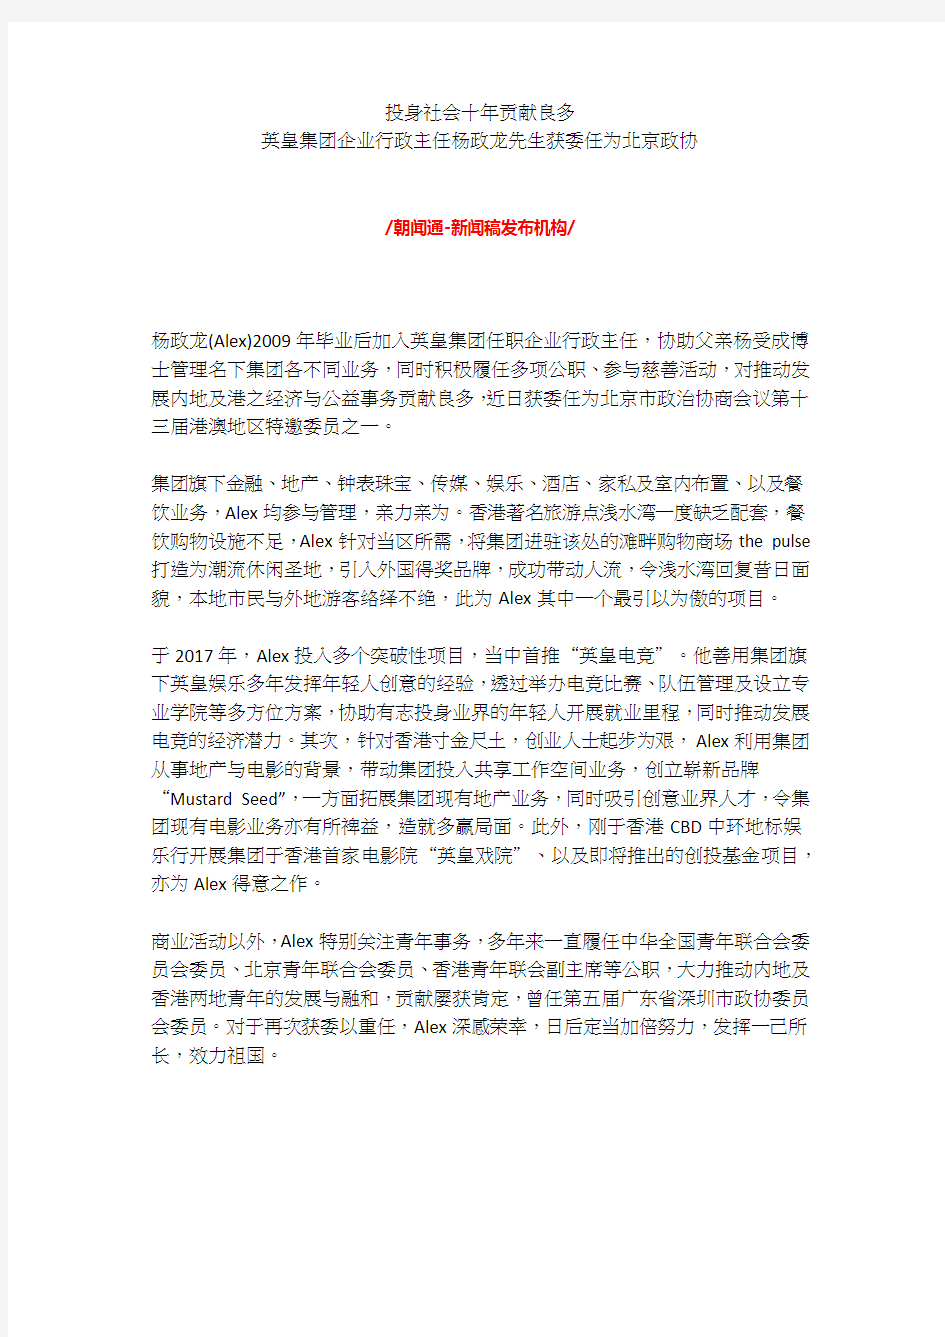 英皇集团企业行政主任杨政龙先生获委任为北京政协